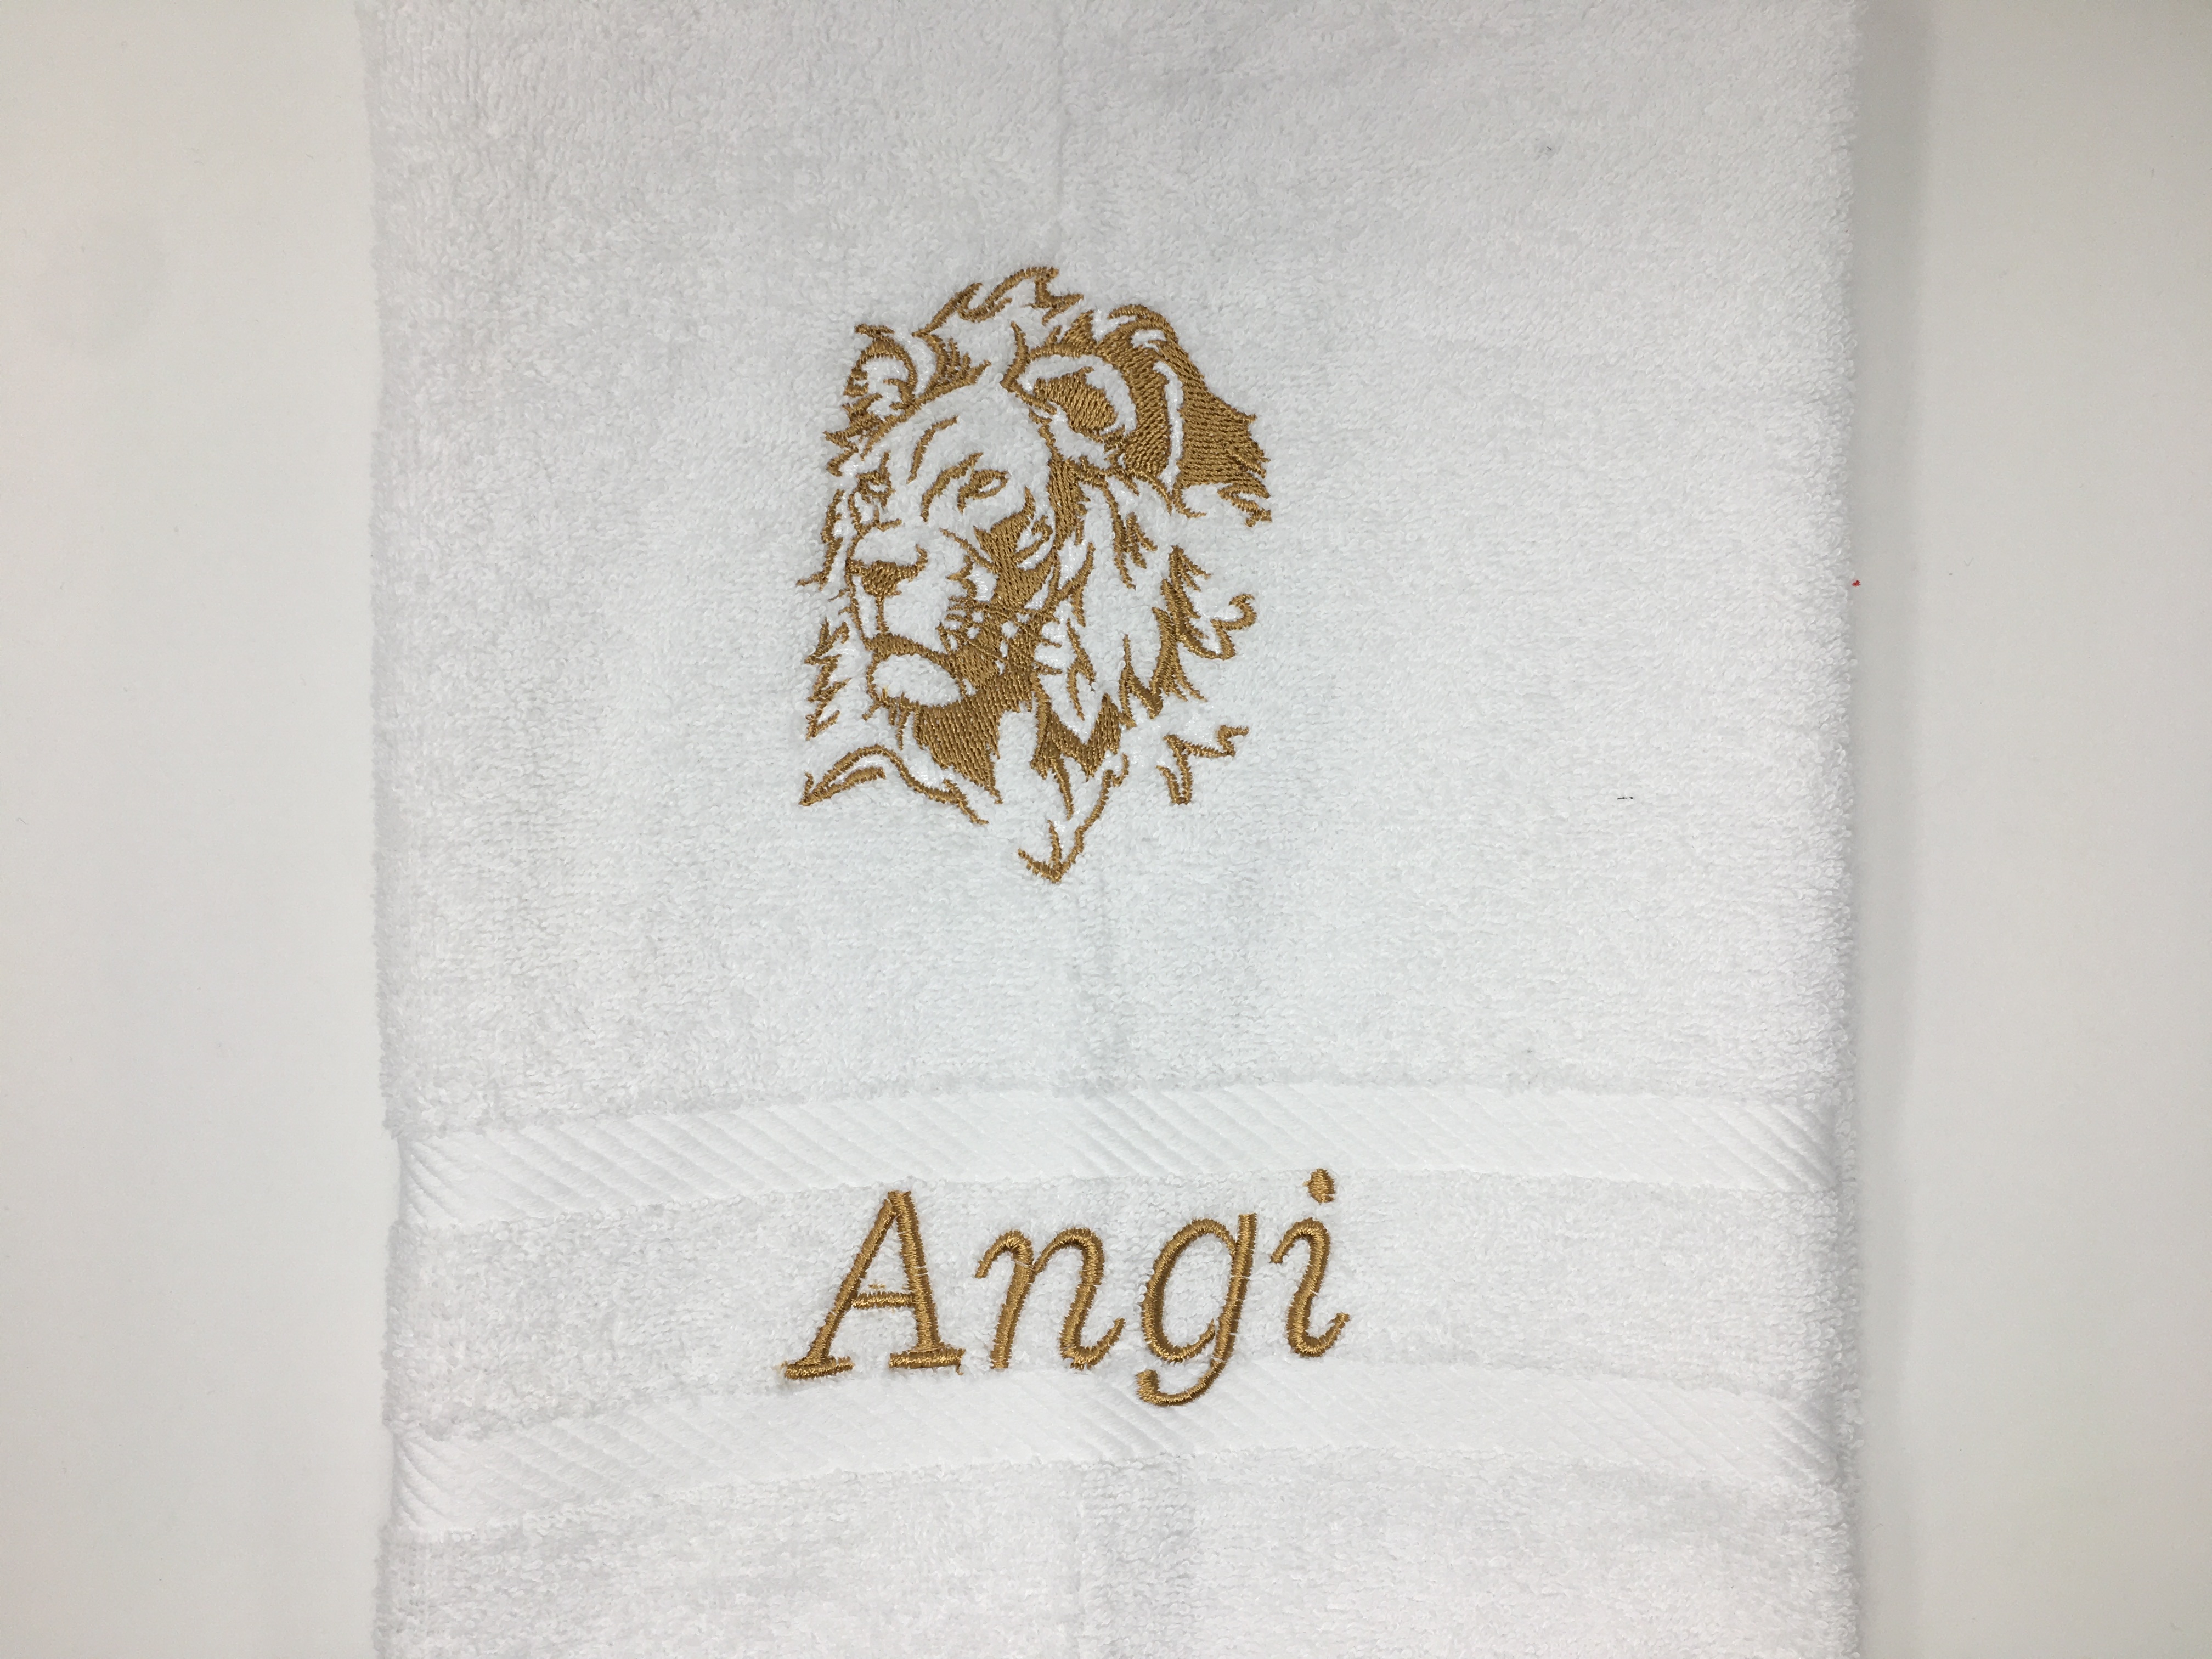 Löwe Löwen Handtuch Duschtuch bestickt & personalisierbar Super Qualität